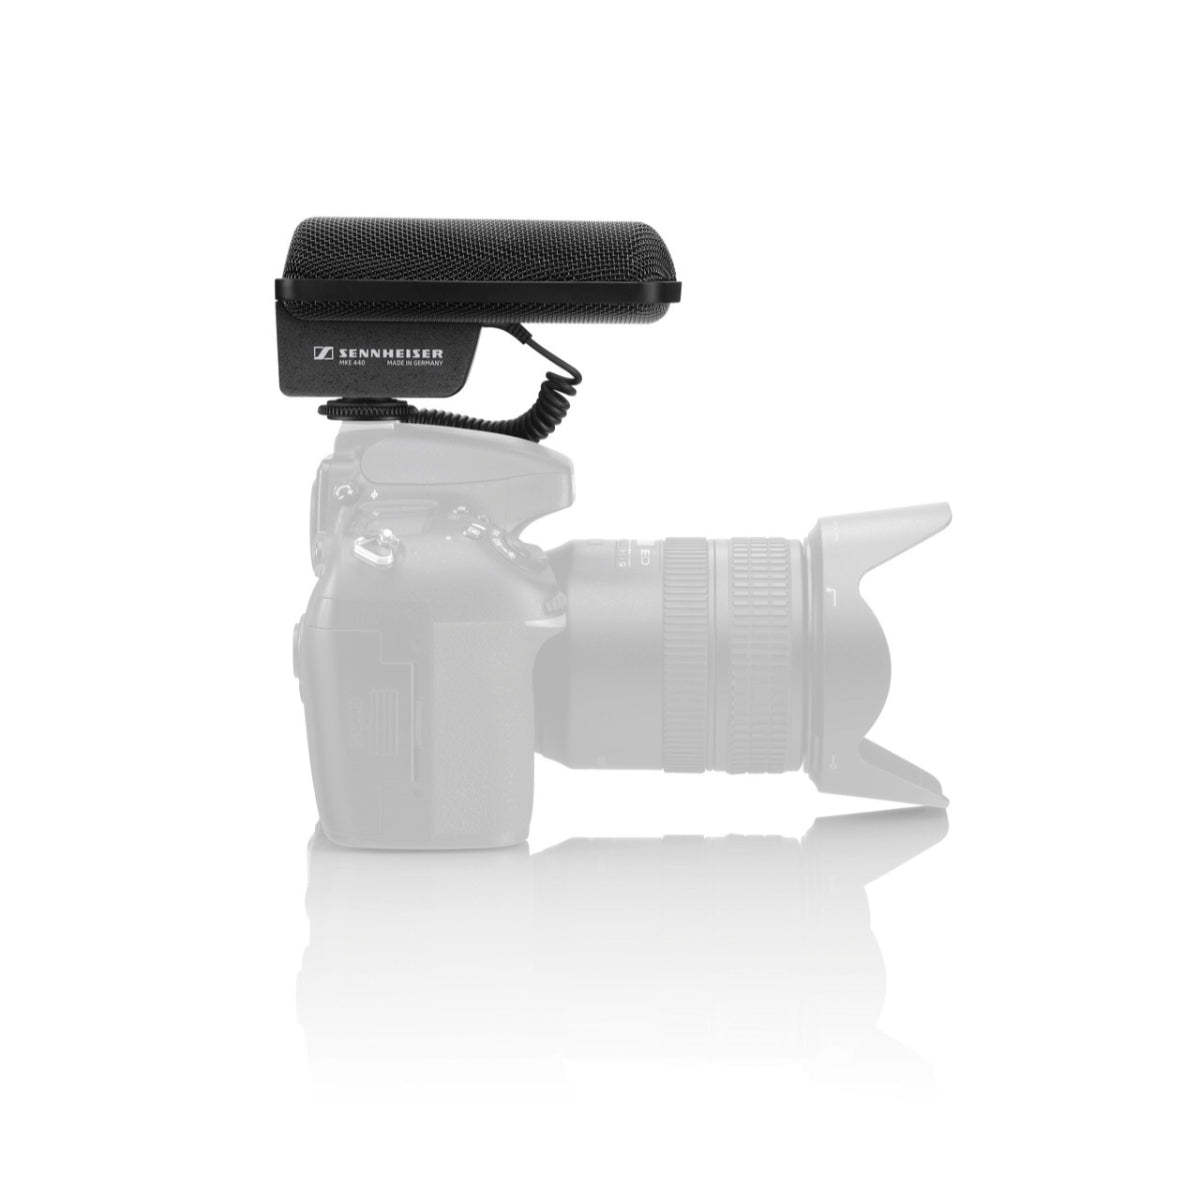 Sennheiser MKE 440 Super Cardioid Camera Microphone, 3.5mm Jack Plug, For DSLR